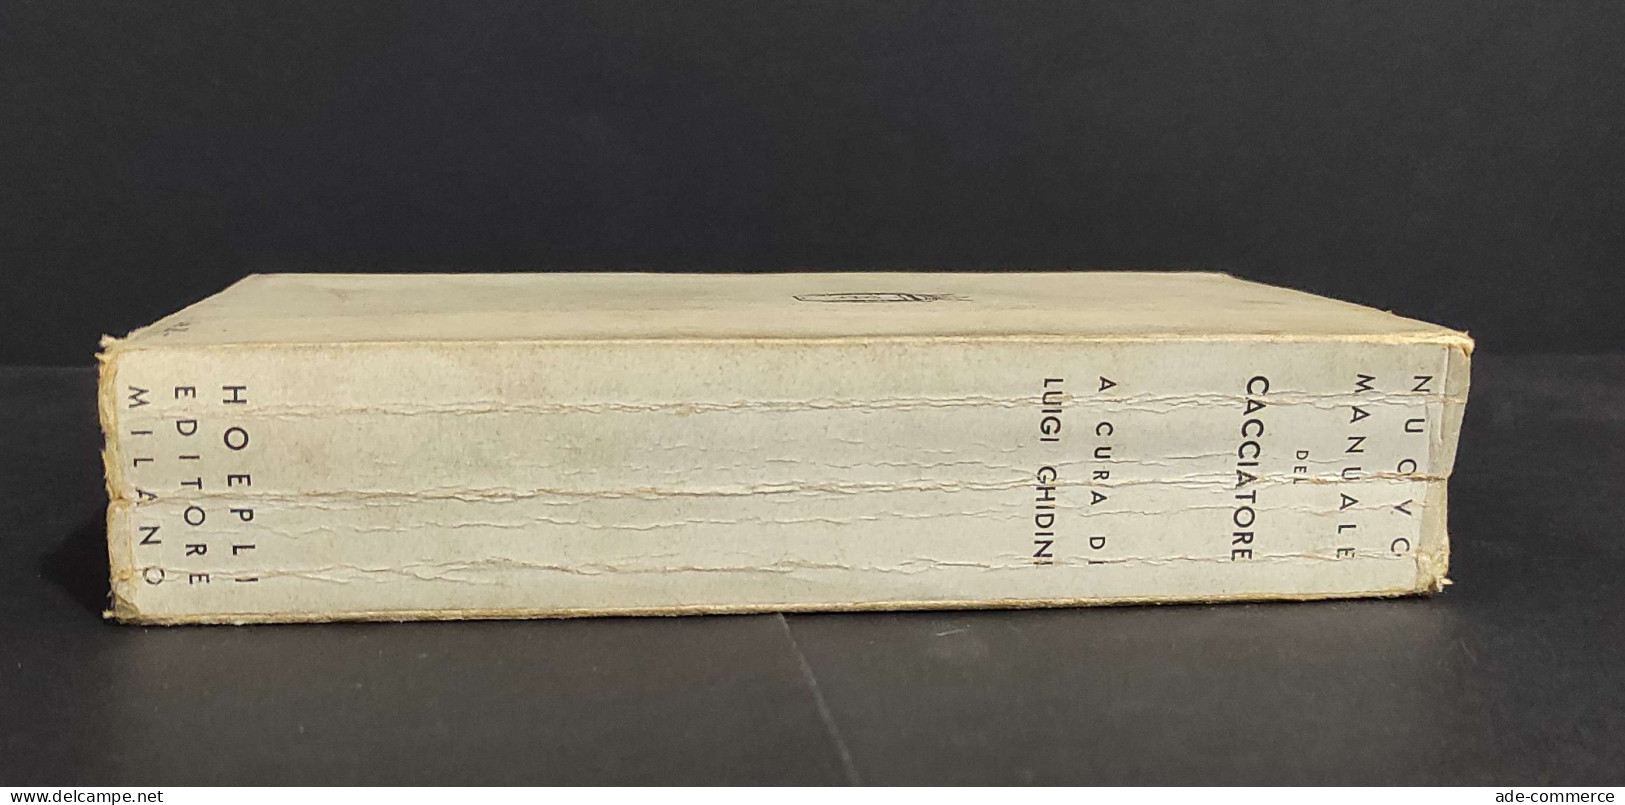 Nuovo Manuale Del Cacciatore - L. Ghidini - Ed. Hoepli - 1940                                                            - Caza Y Pesca